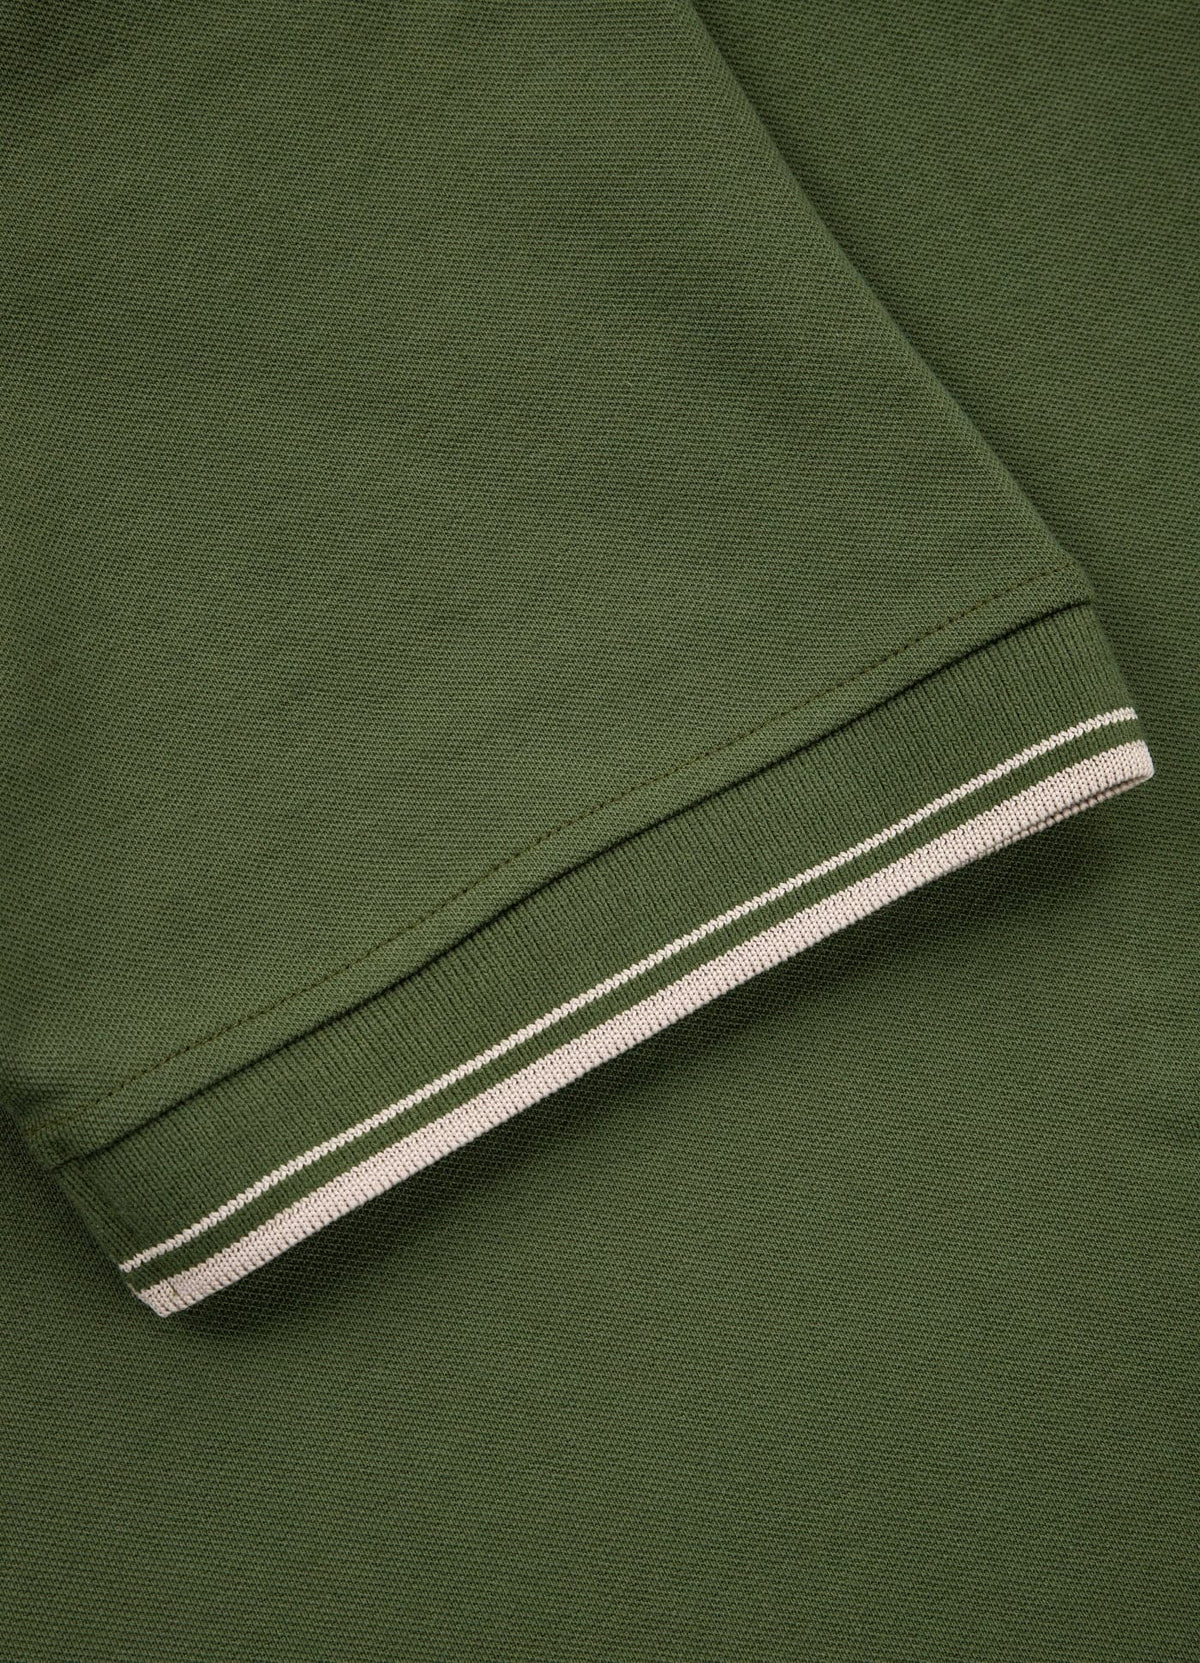 PIQUE STRIPES REGULAR Olive Polo T-shirt - Pitbullstore.eu